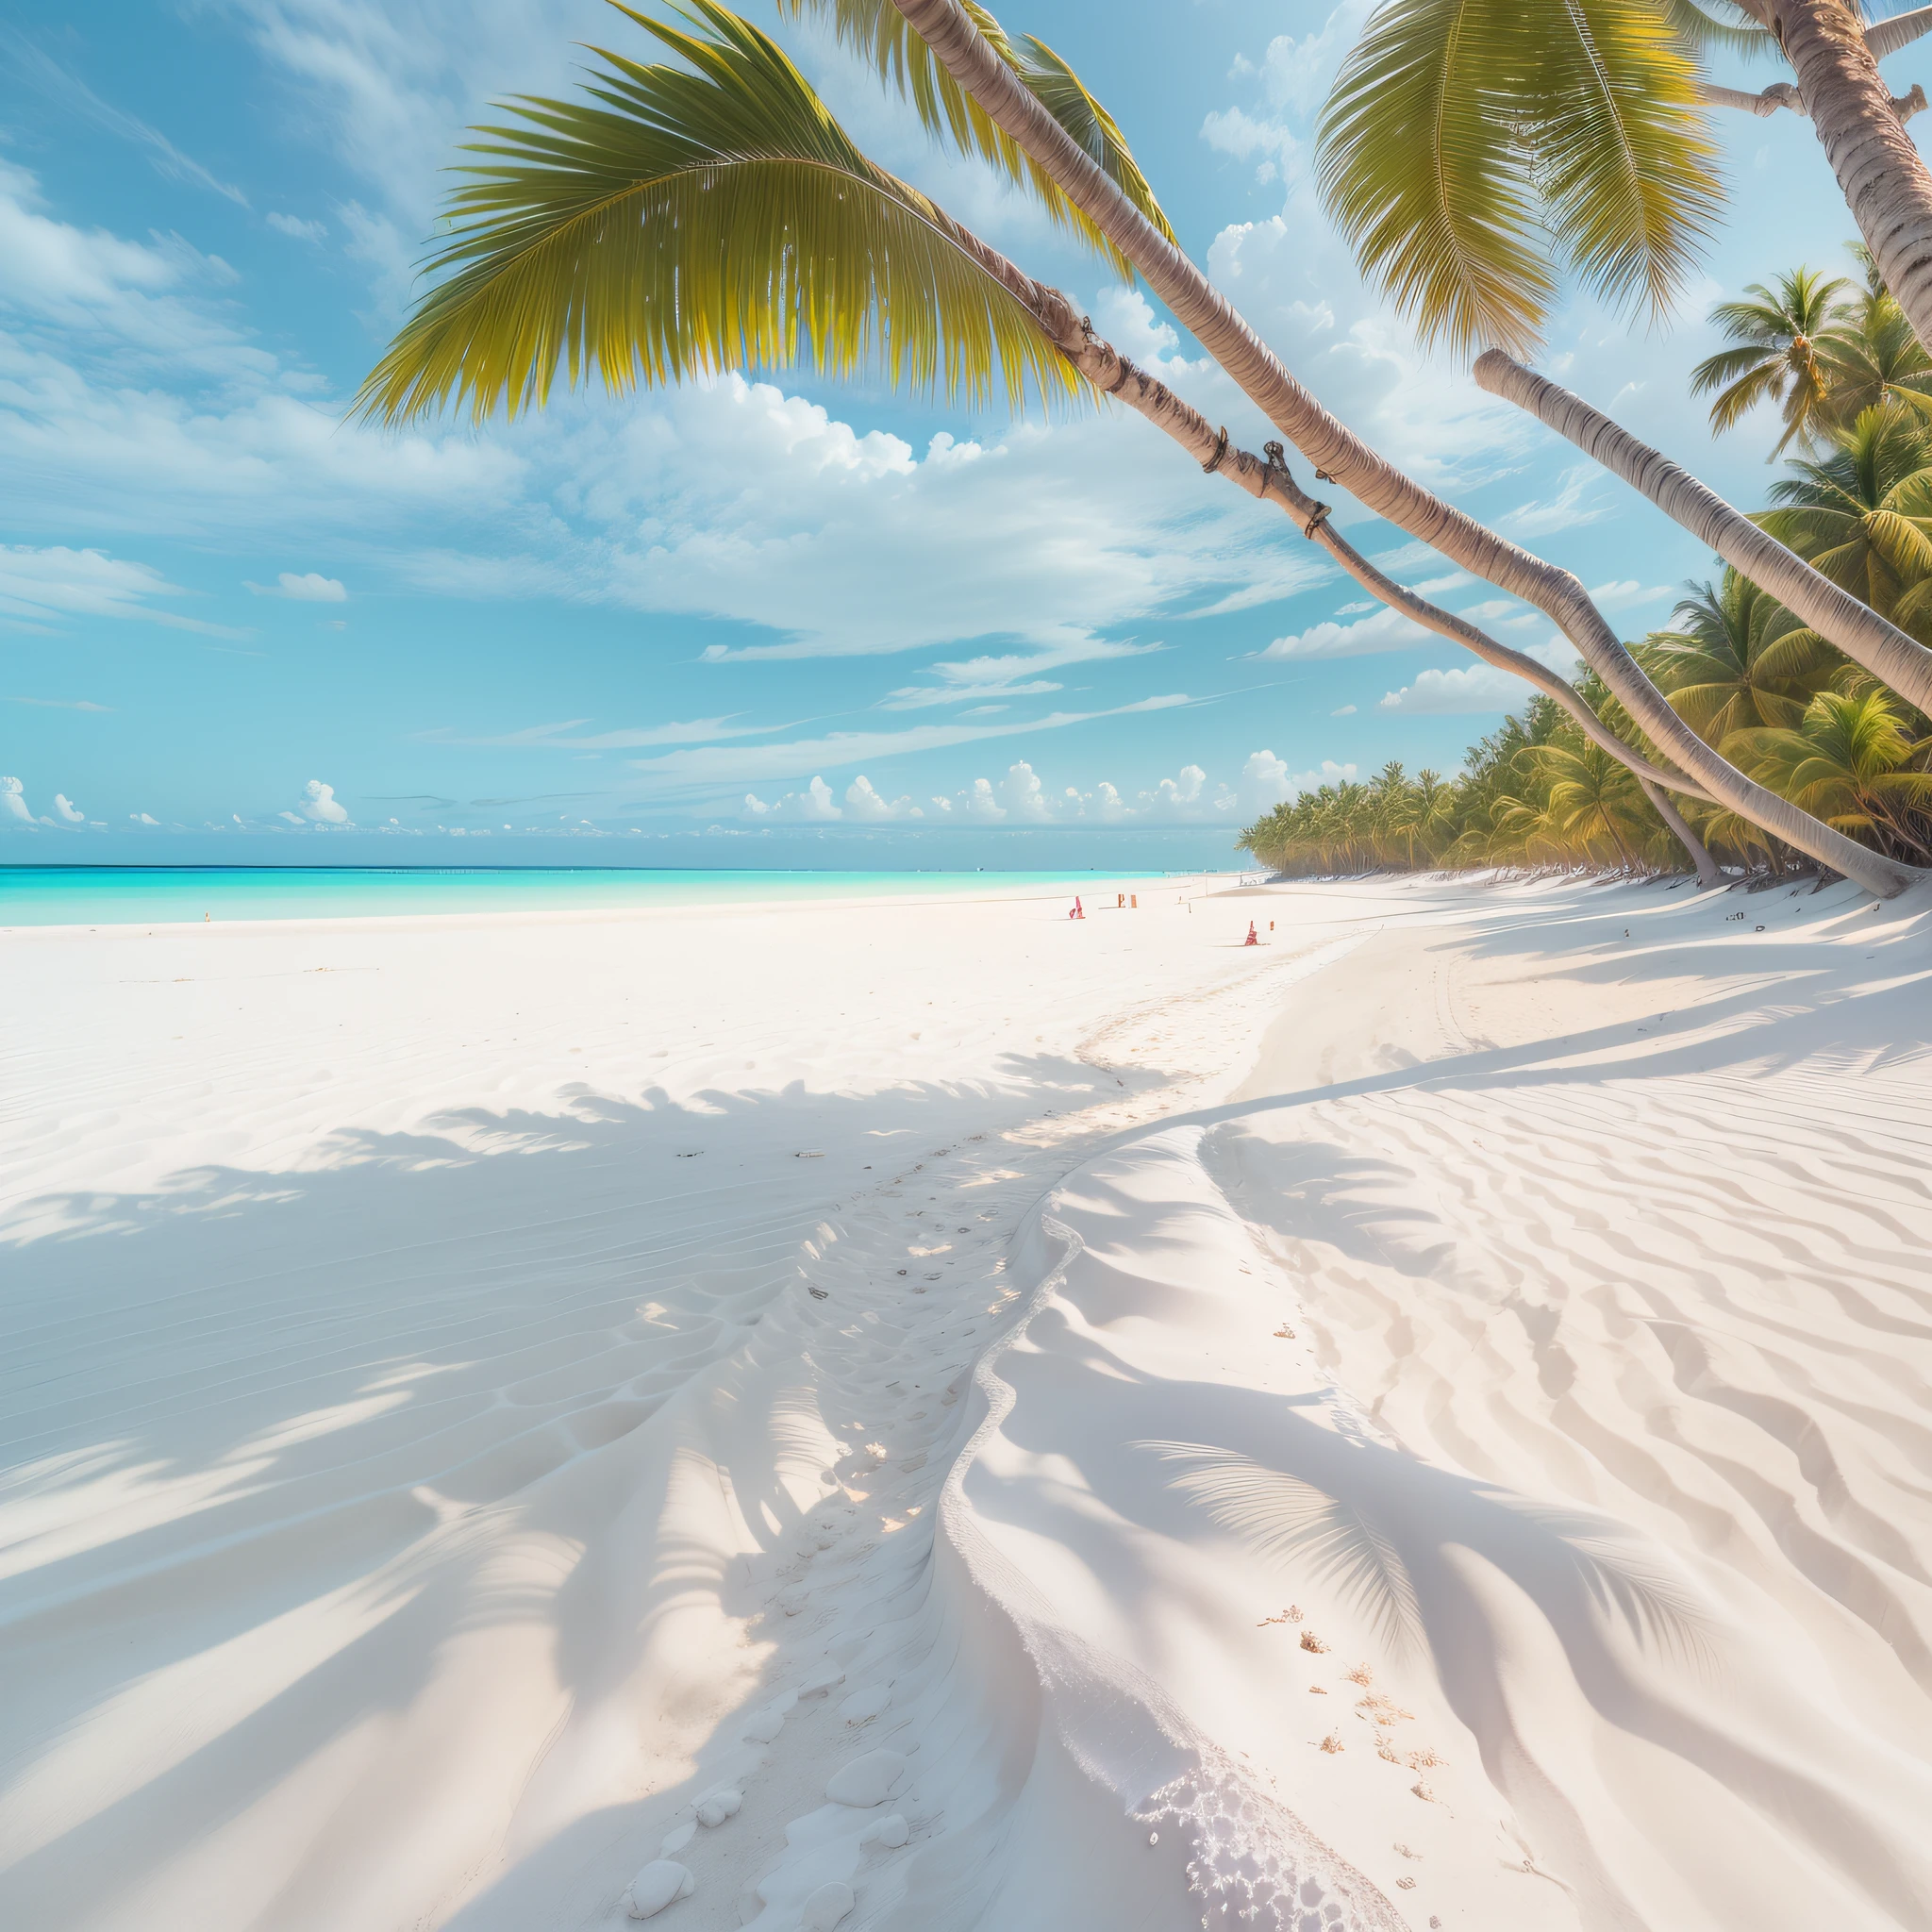 playa de arena blanca, sol y mar tranquilo. bandera tropical